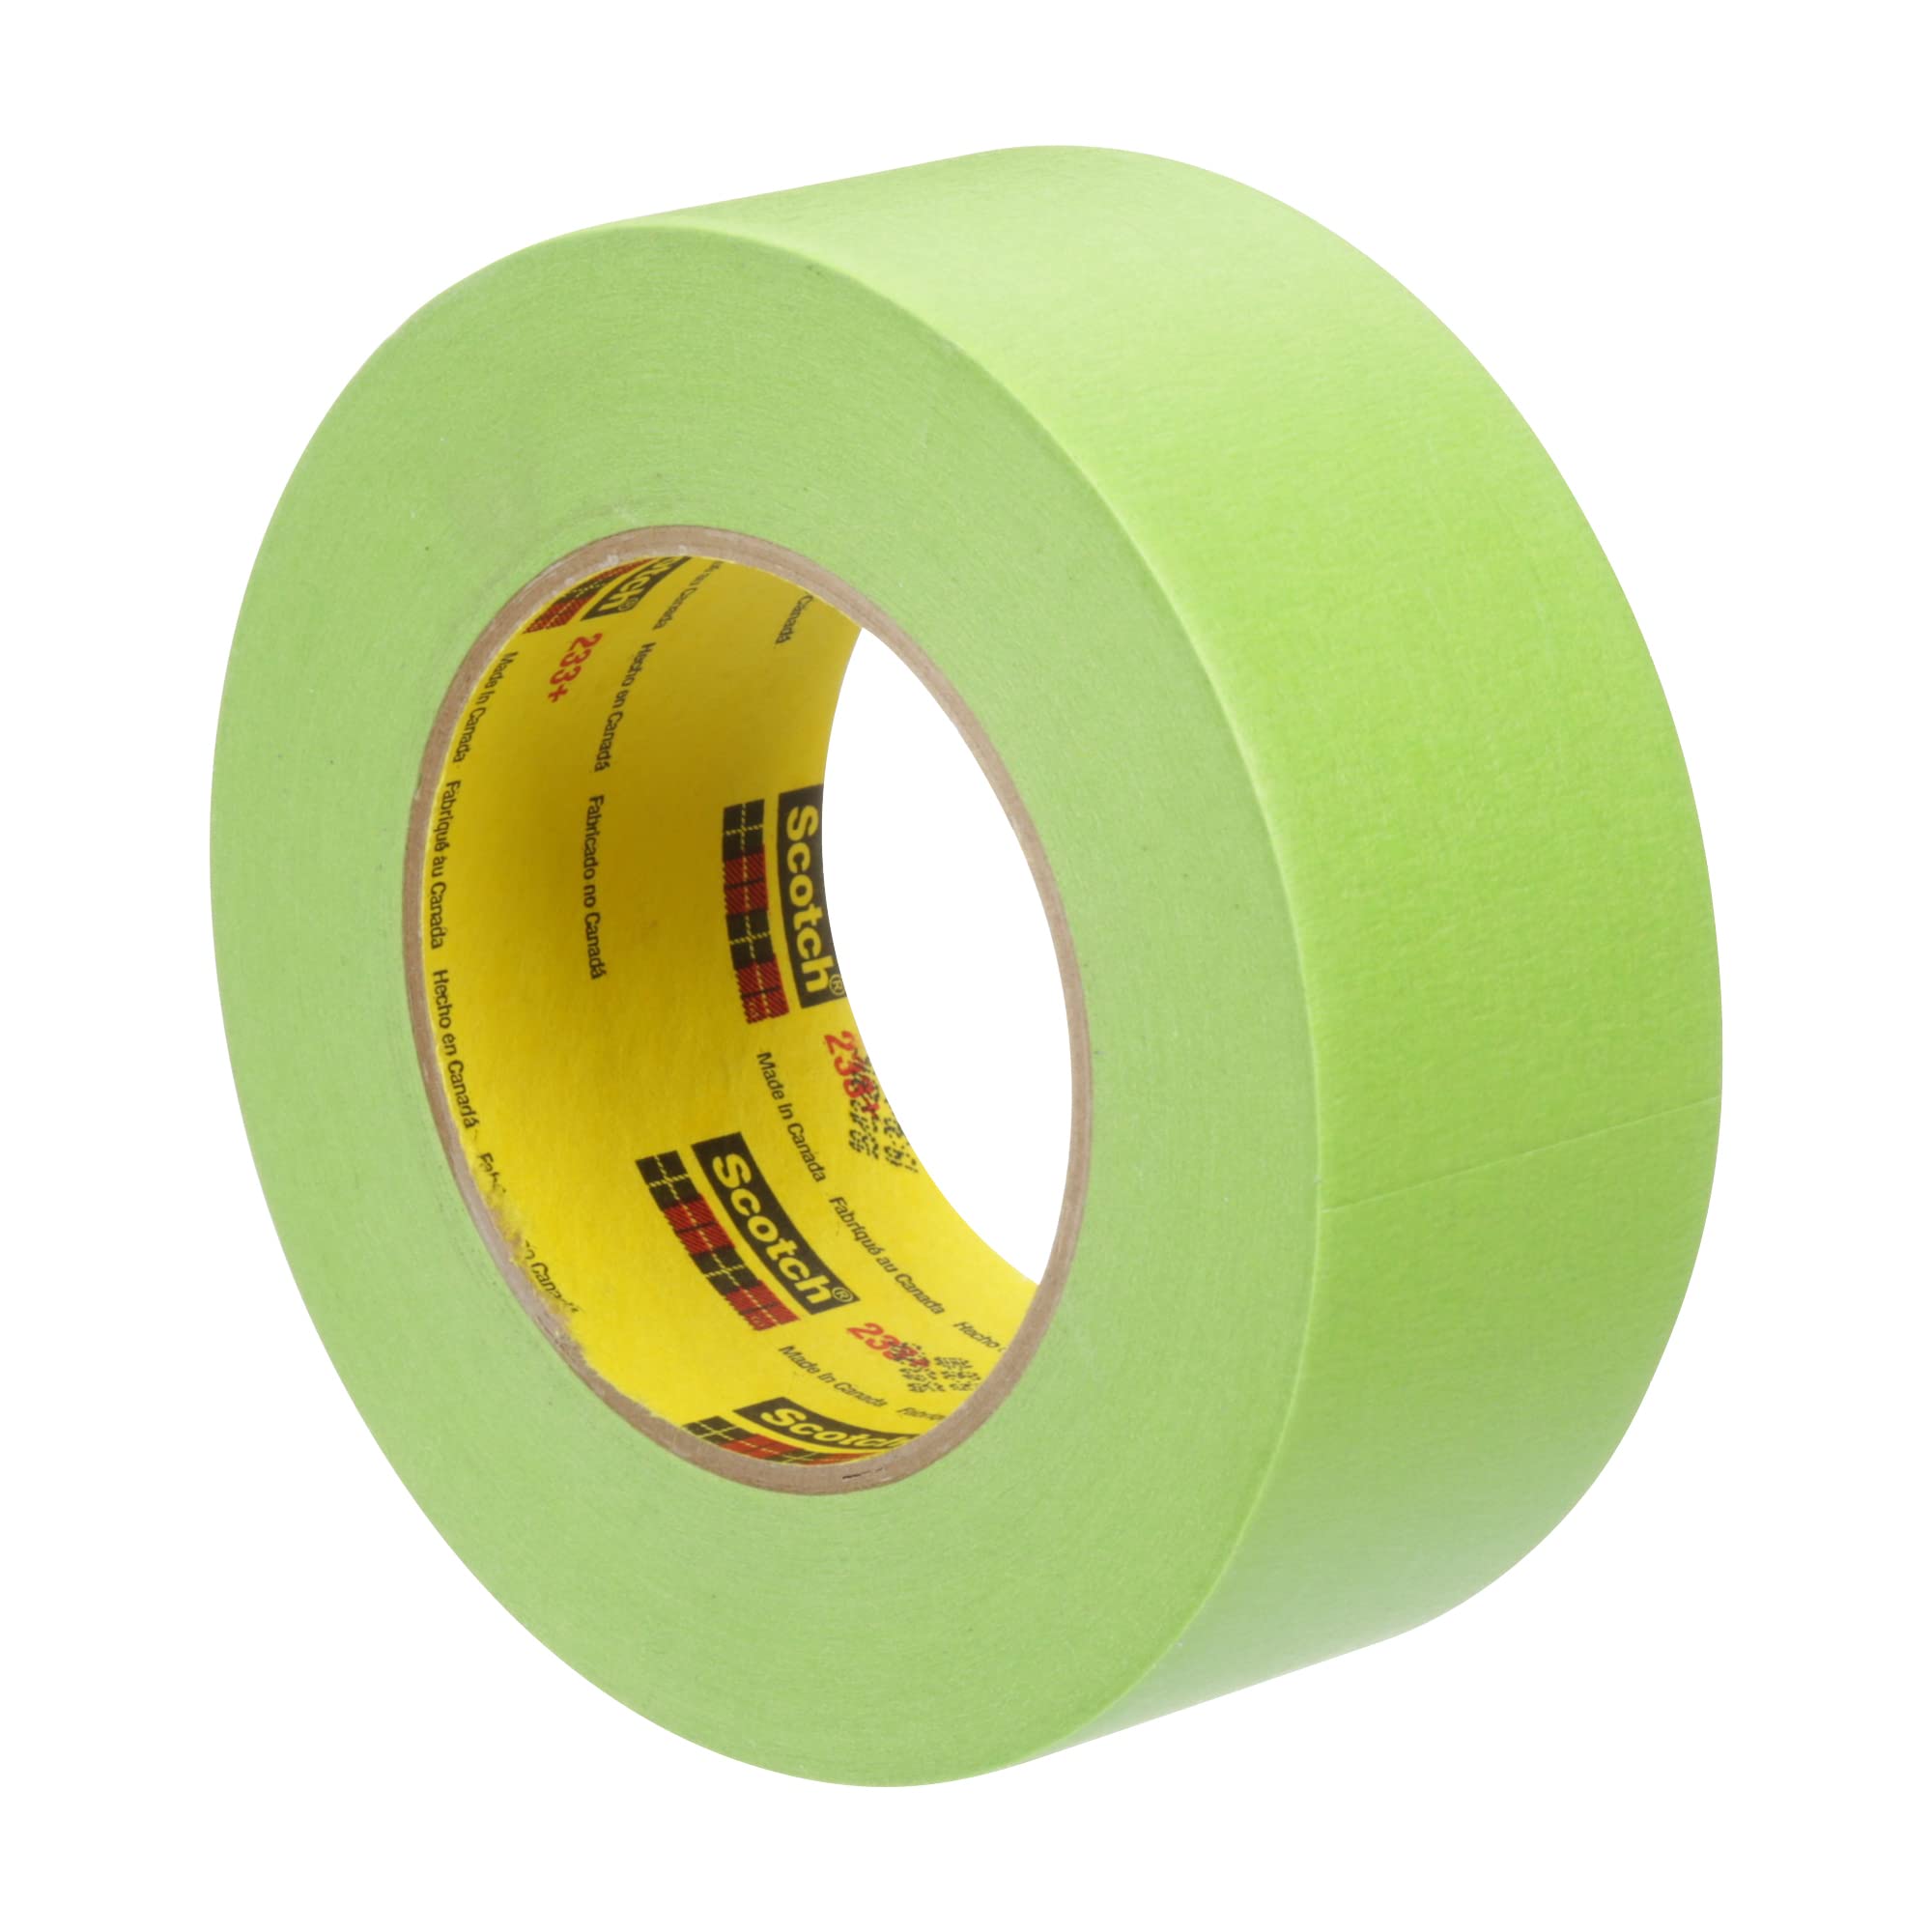 3M スコッチ パフォーマンス マスキングテープ 233+ 26340、耐湿性、柔軟性、緑色、48 mm x 55 m、12/ケース